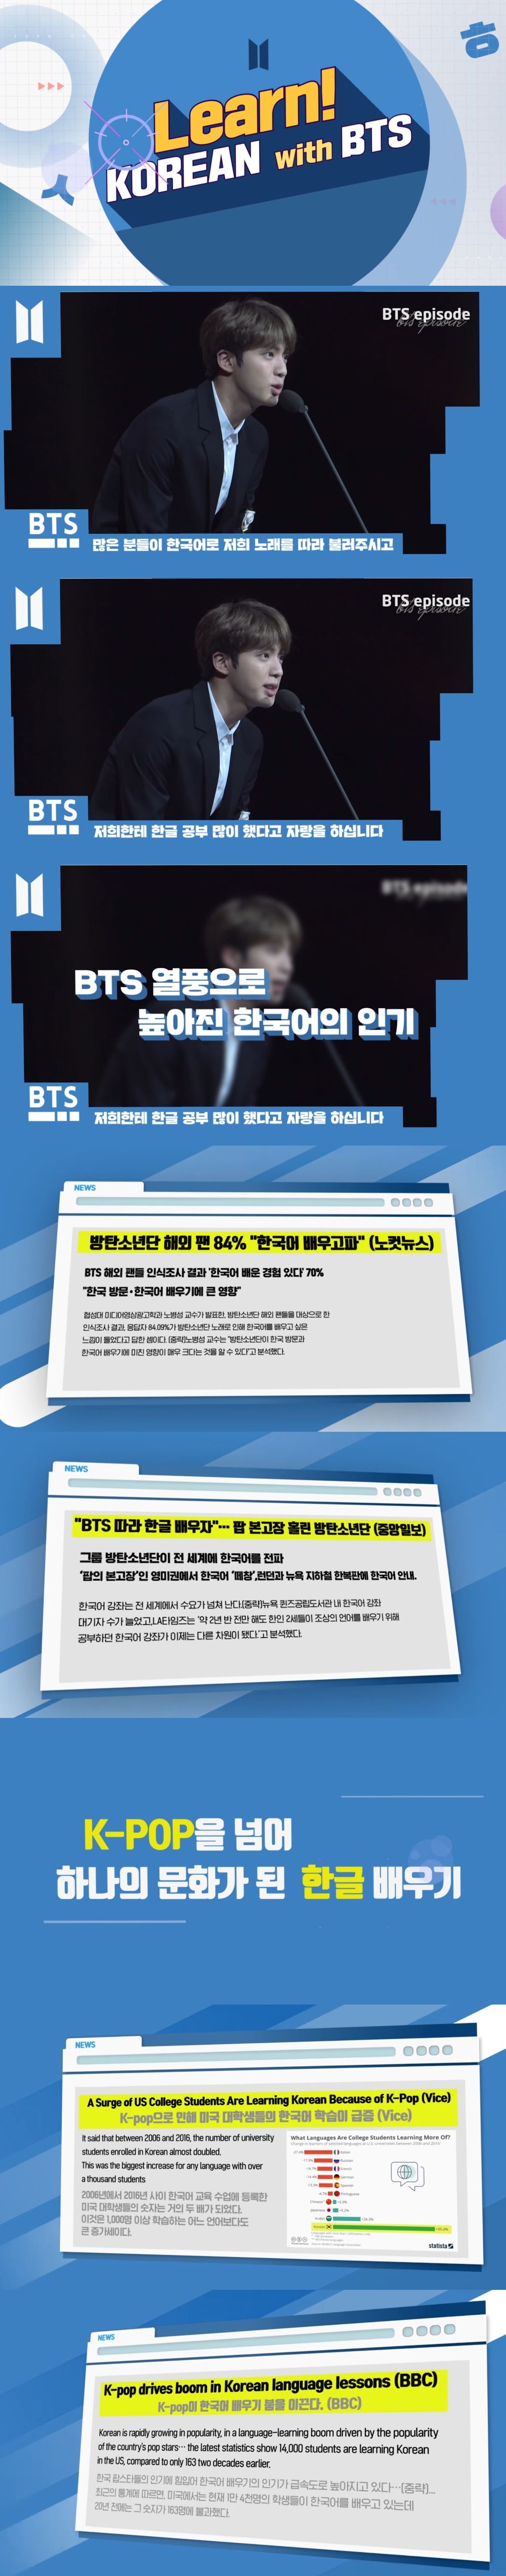 런 코리안 위드 BTS (Learn Korean with #BTS)